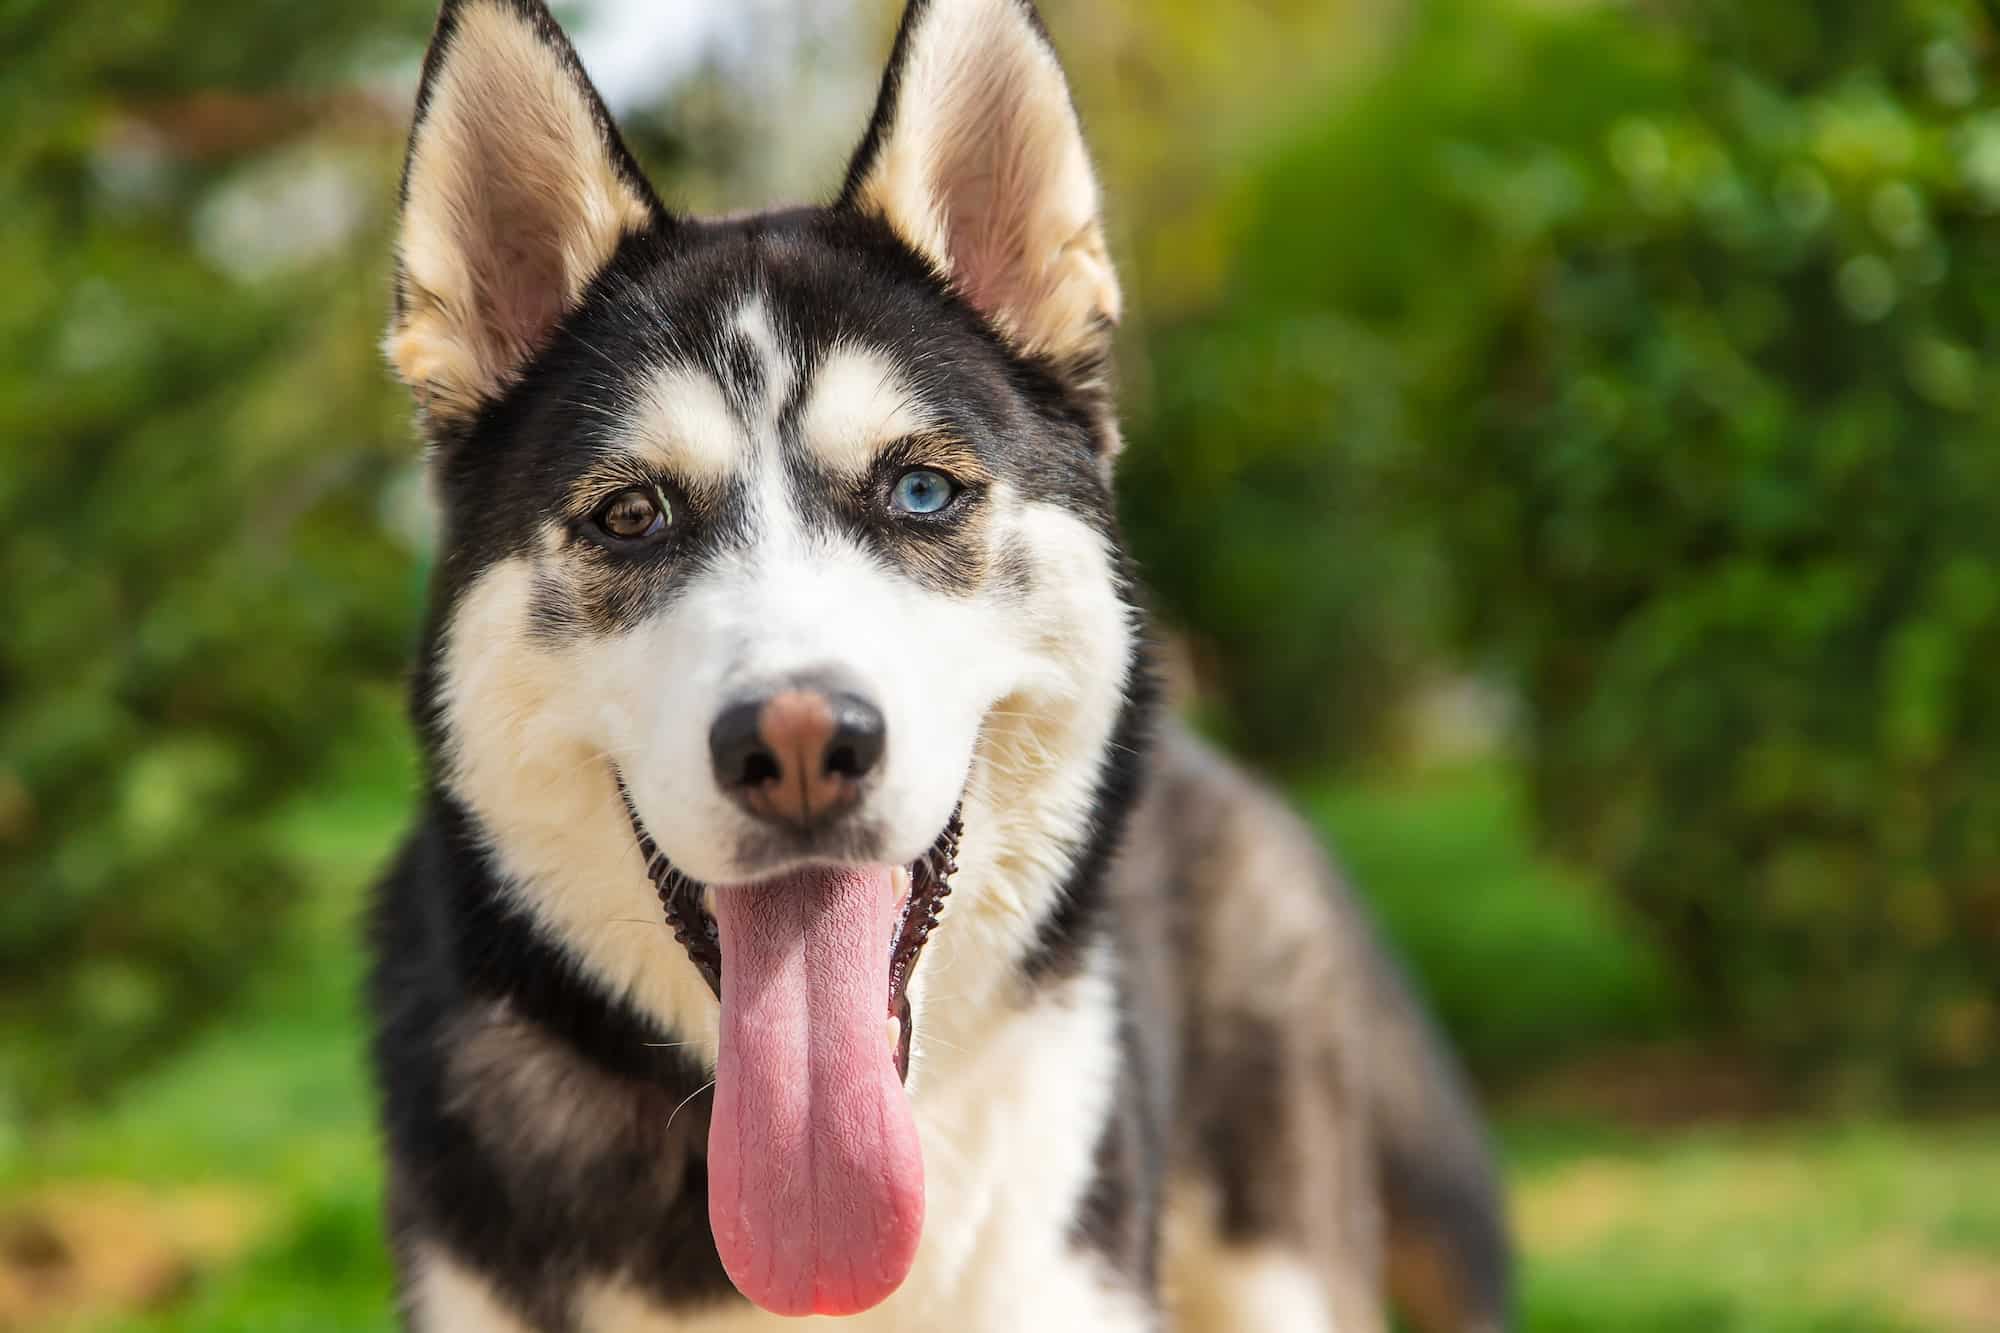 Husky dog portrait beautiful photo. Selective focus.